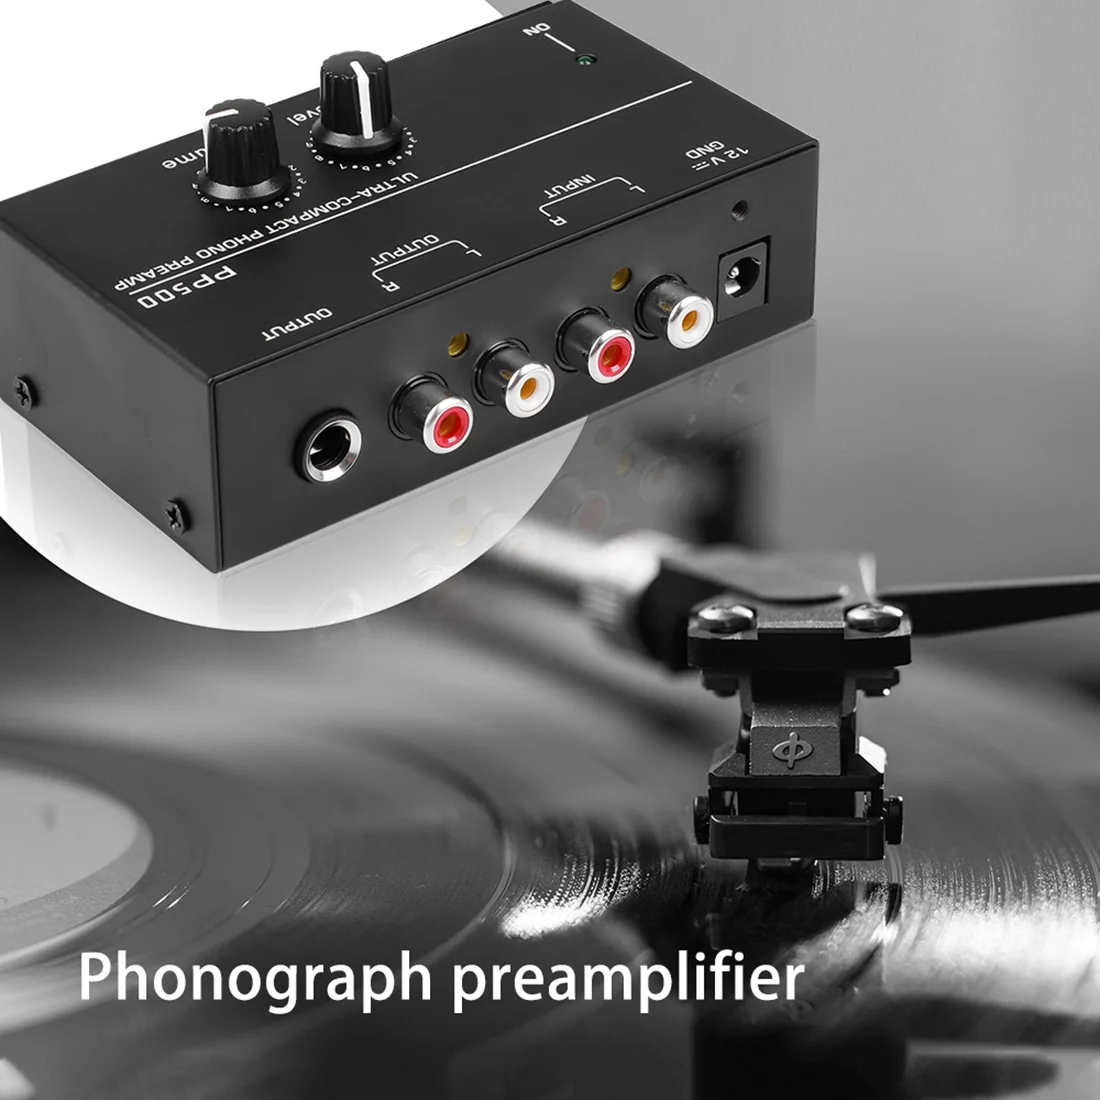 Ultra kompakter Phono-Vorverstärker pp500 mit Bass-Höhen ausgleich Lautstärke einstellung Vorverstärker-Plattenspieler-Vorverstärker-US-Stecker